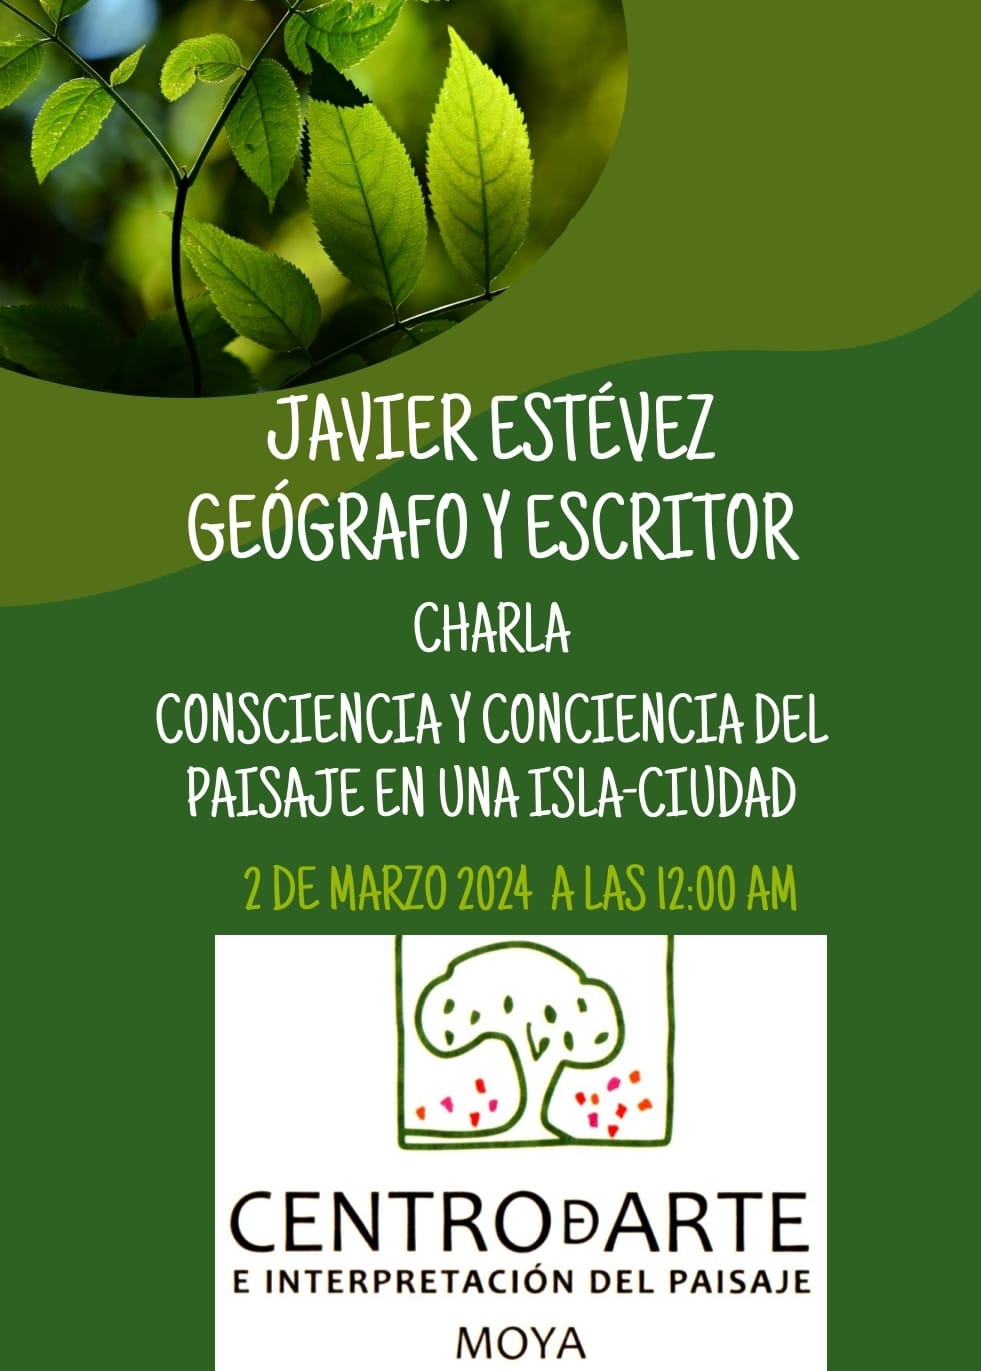 Charla de Javier Estévez en el Centro de Arte e Interpretación del paisaje de Moya